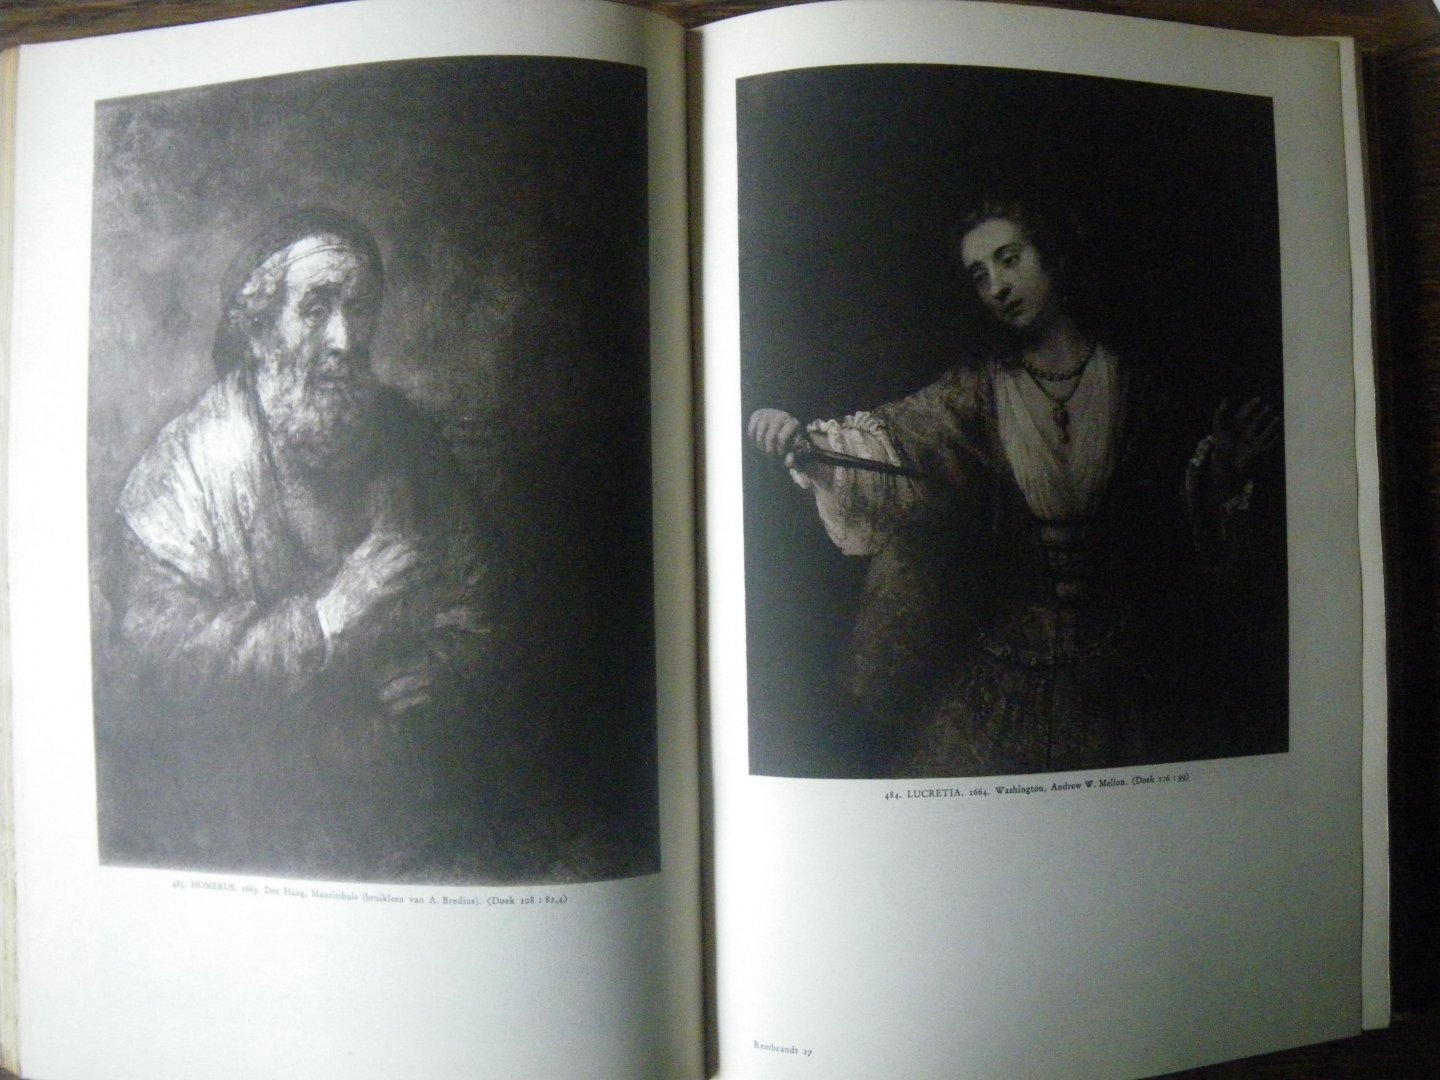 inl. Dr. A. Bredius - Rembrandt schilderijen met 630 afbeeldingen en tekst